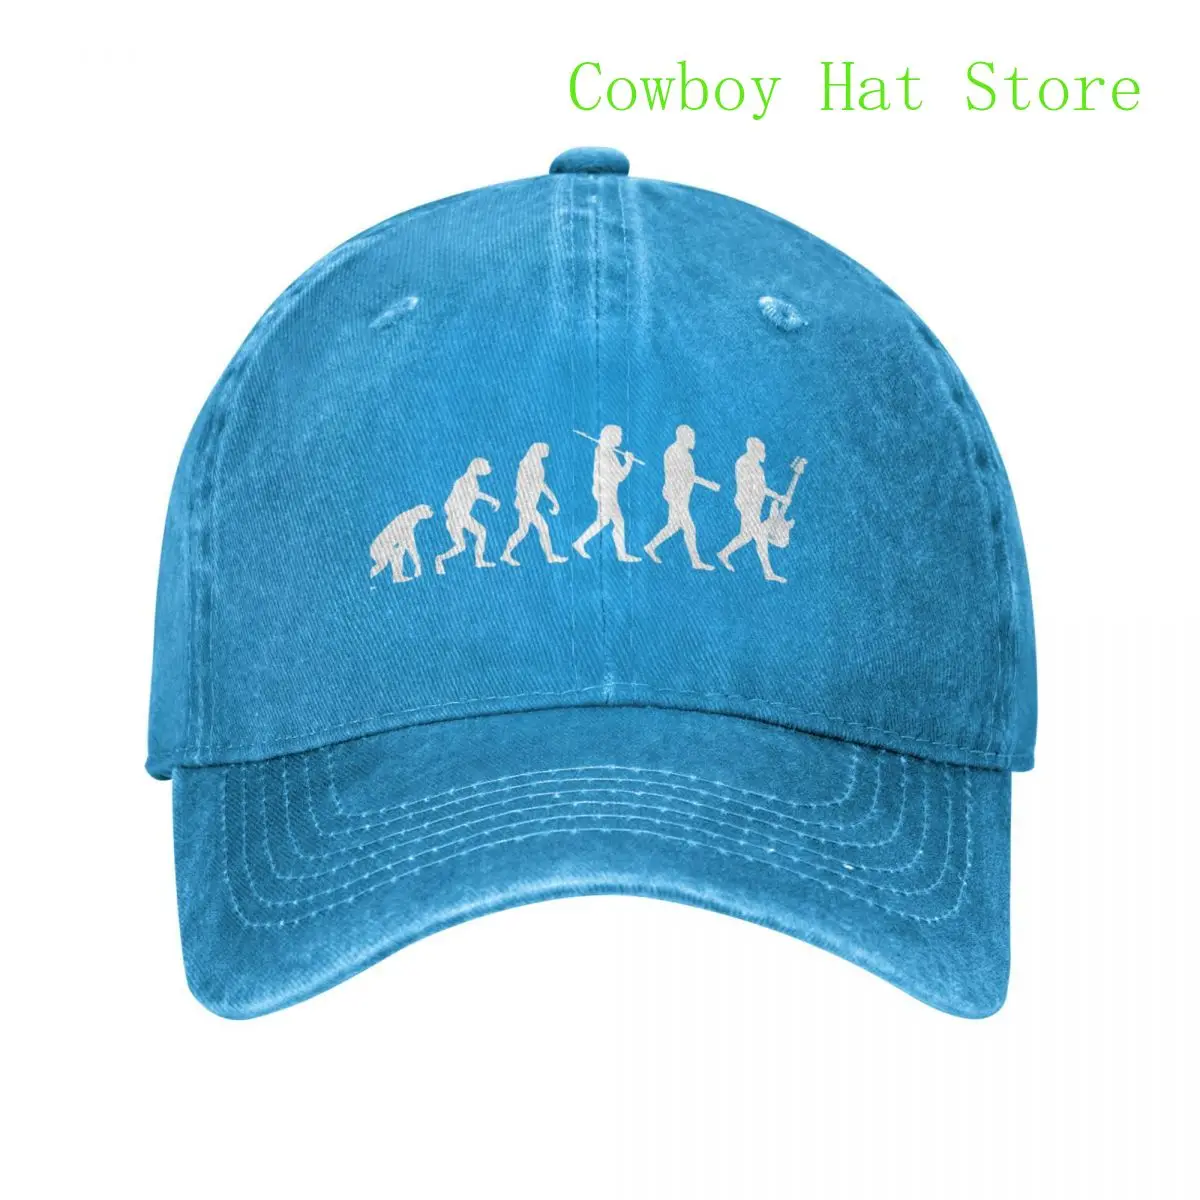 הכי טוב גיטרה בס האבולוציה כובע בייסבול סמל אופנת רחוב נשים כובע לגברים